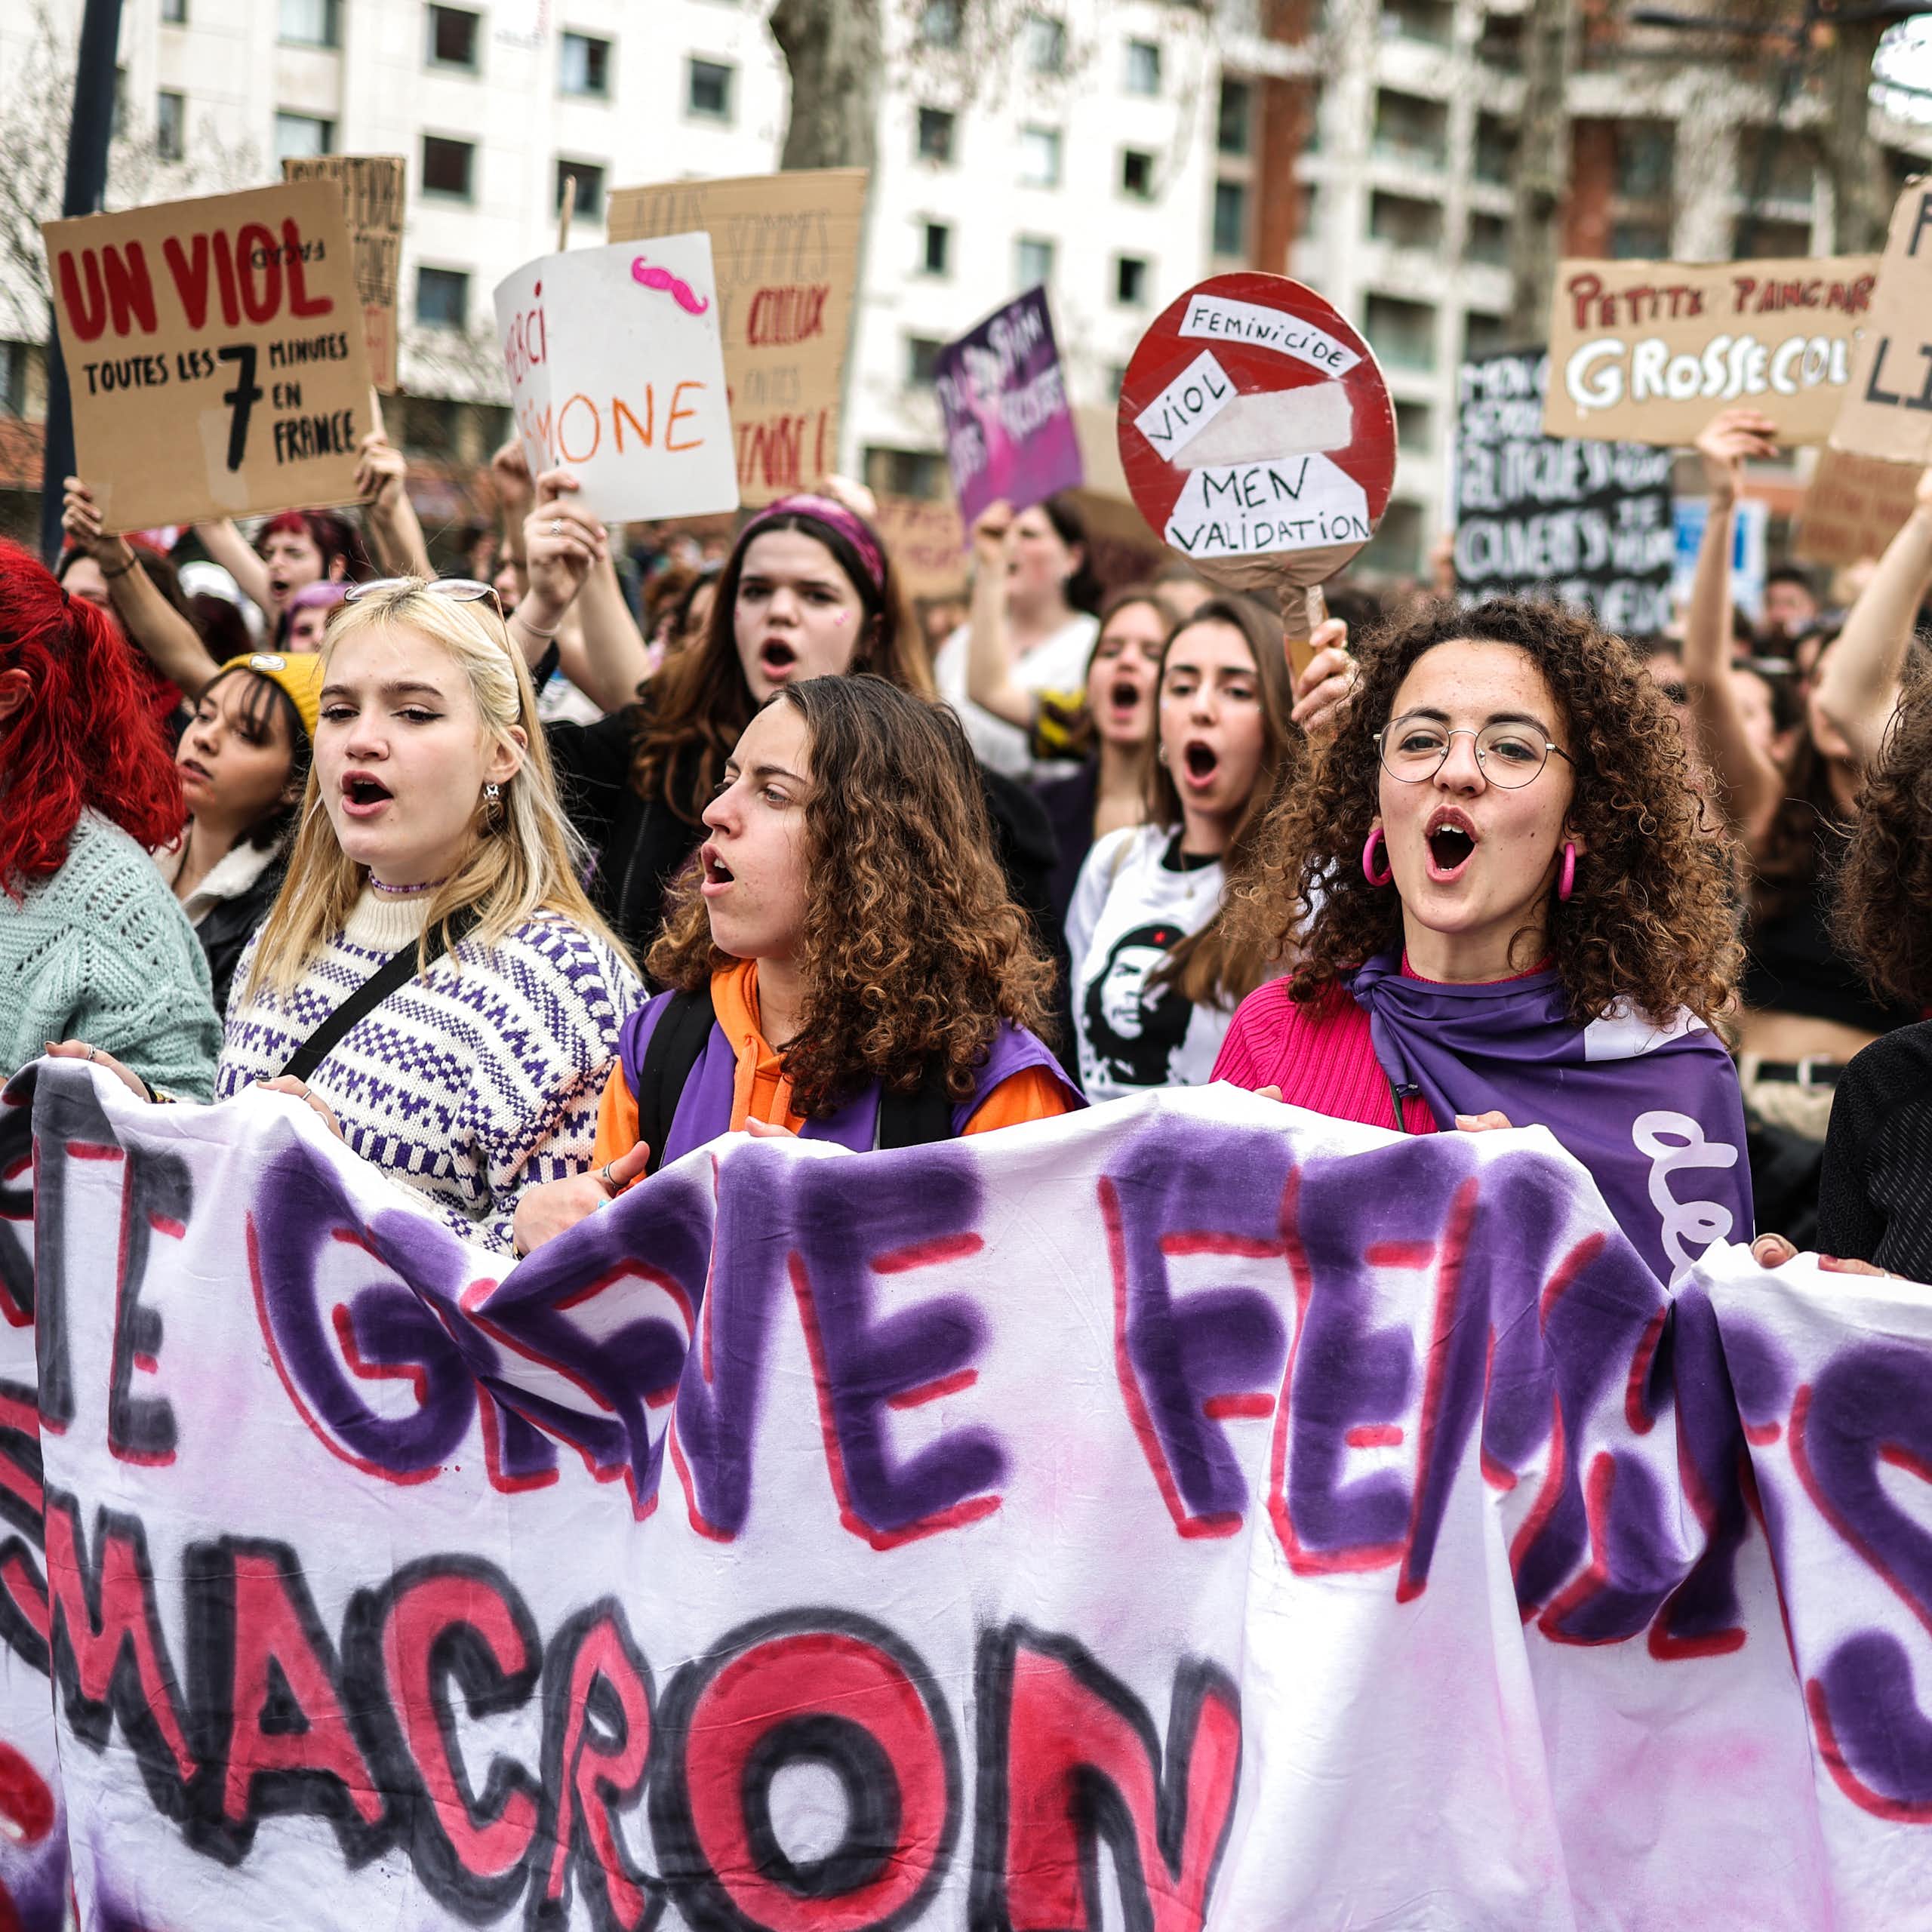 « Si on s’arrête le monde s’arrête » ou comment la grève féministe s’est installée en France